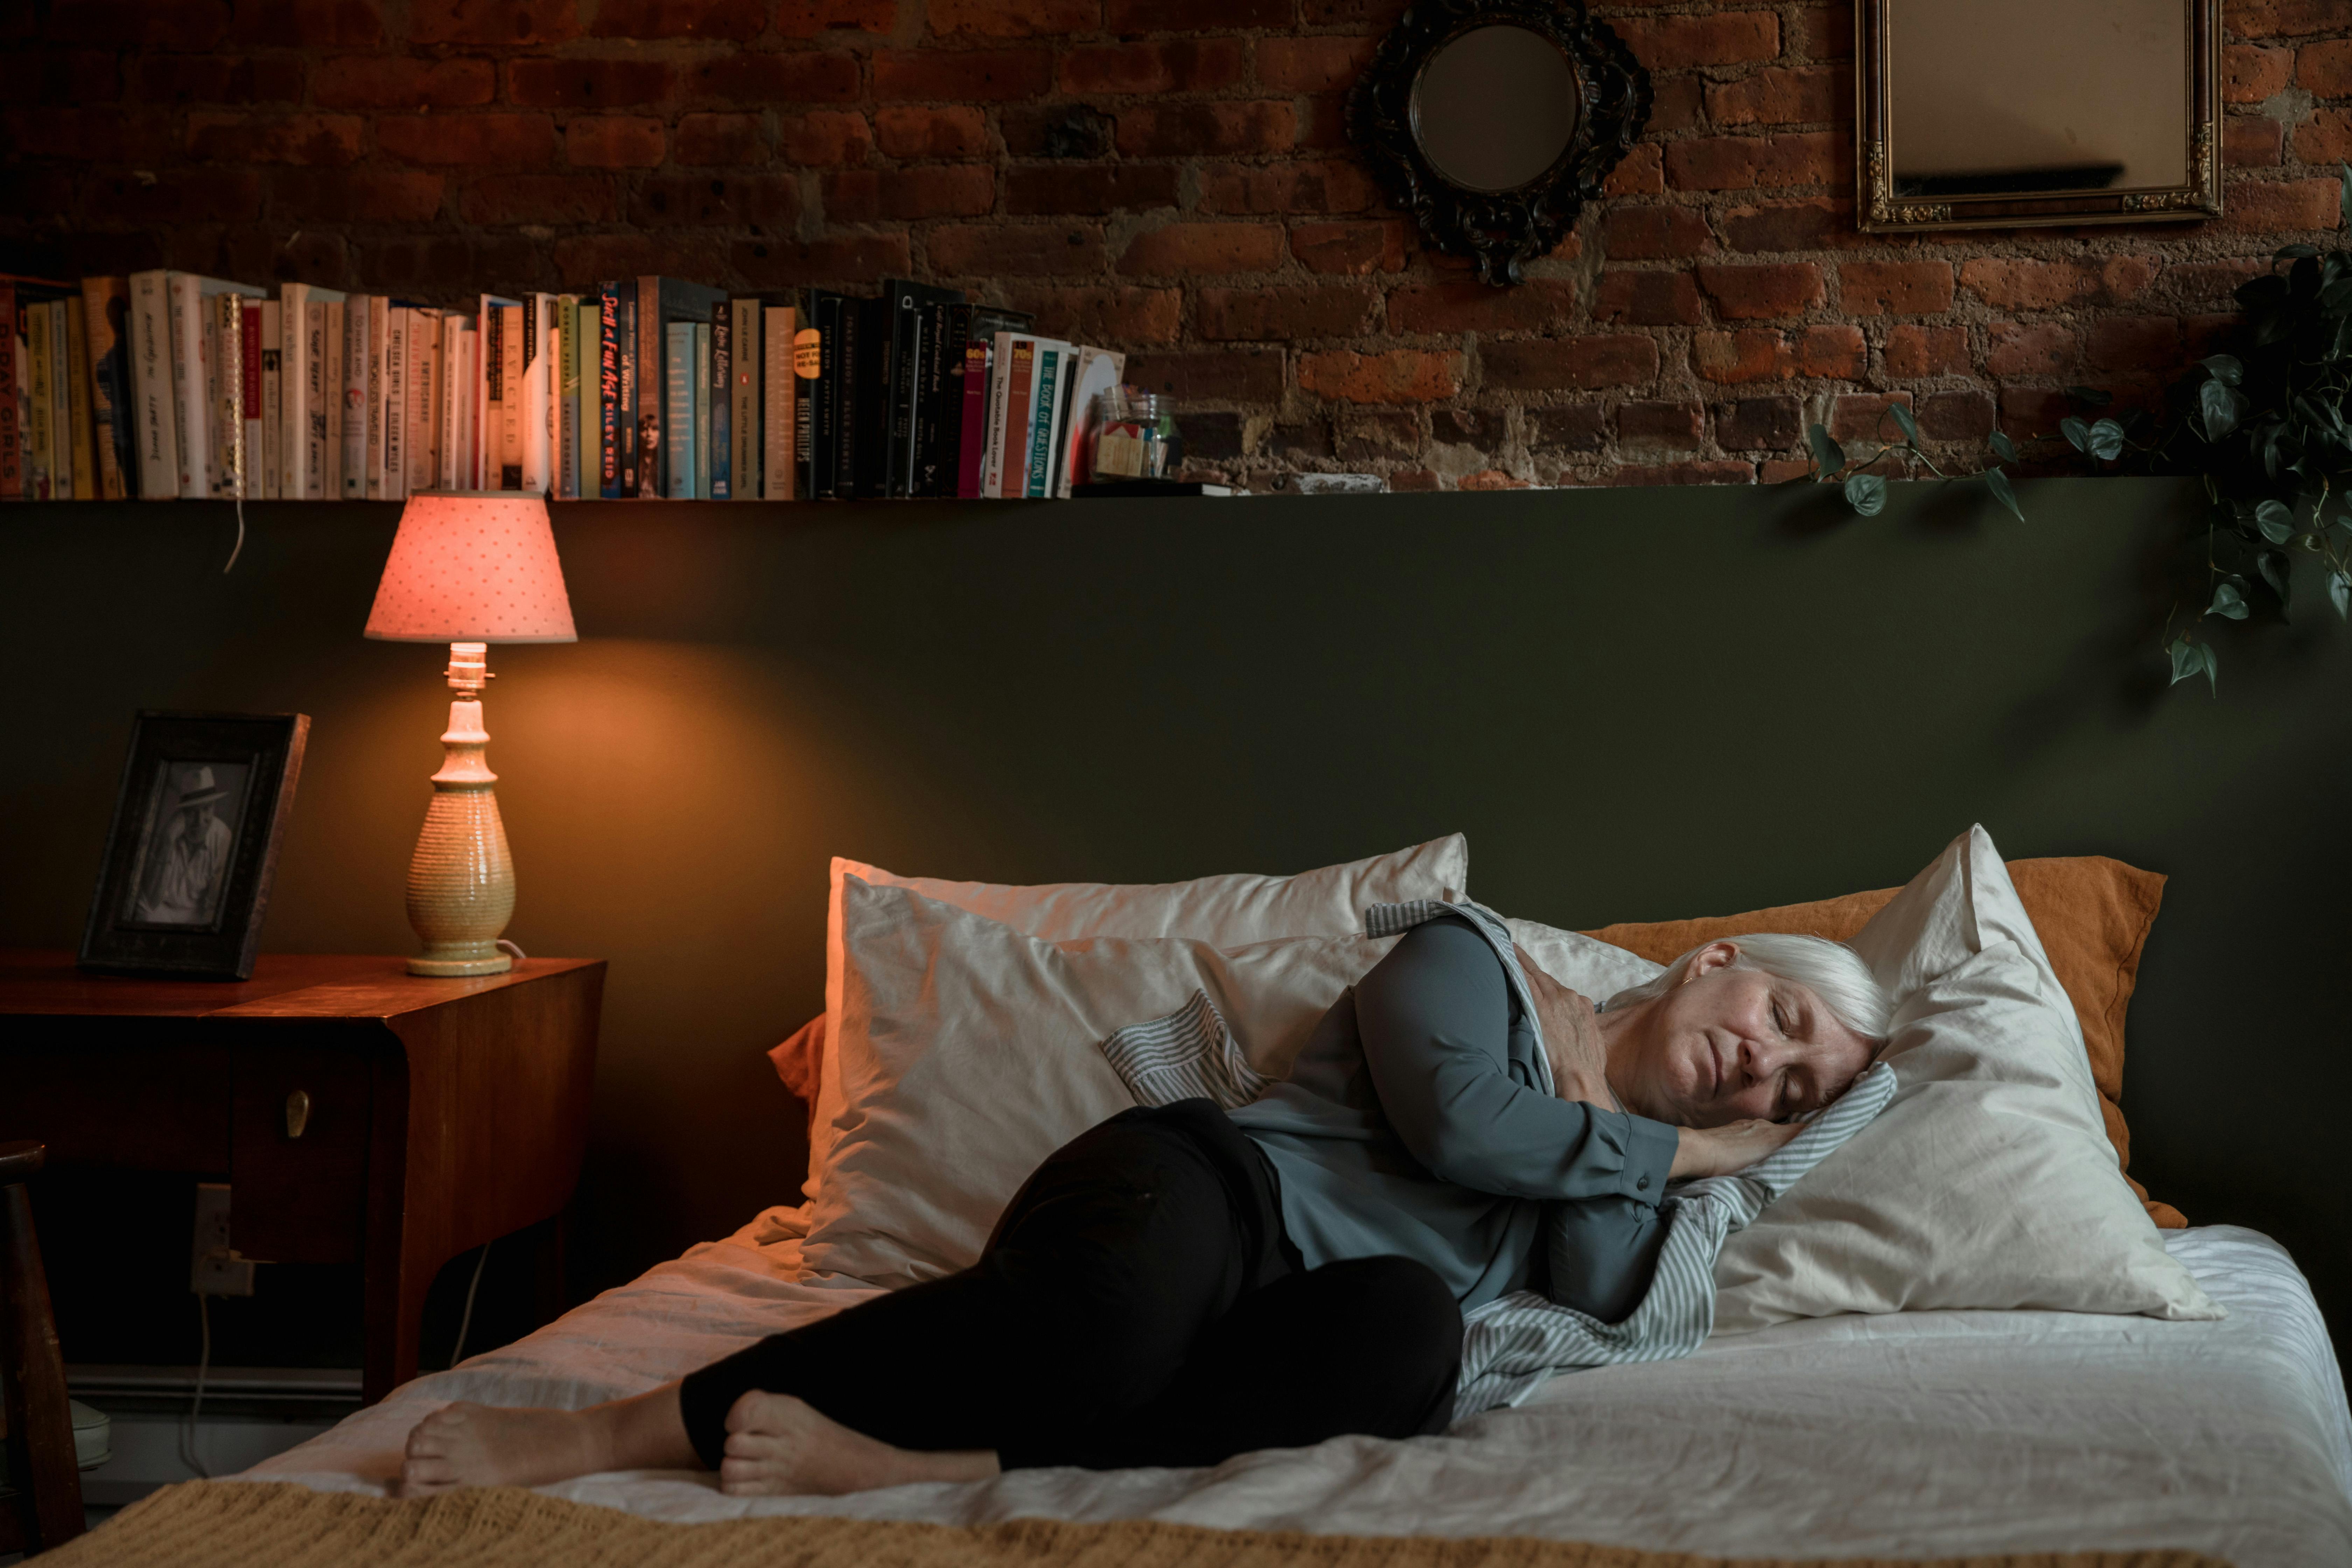 Grand-mère se reposant dans son lit, l'air plus fatigué et plus fragile qu'auparavant | Source : Pexels